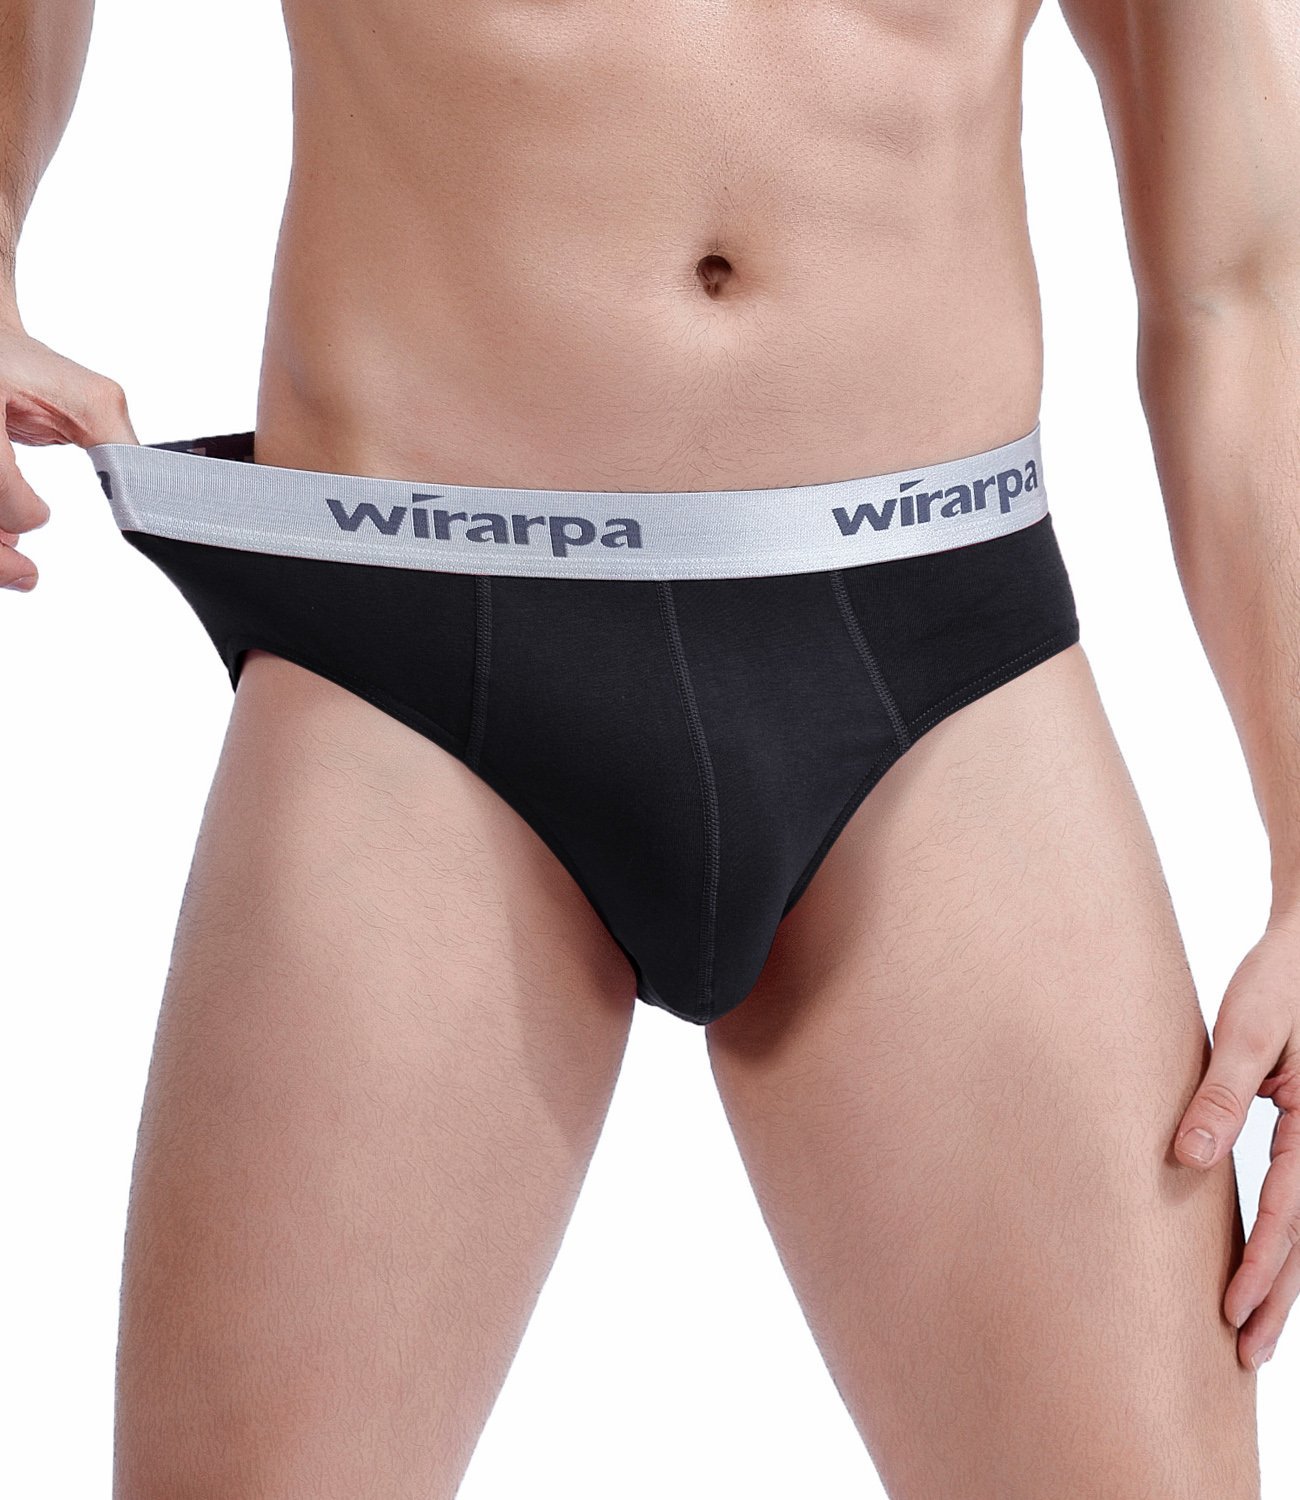 wirarpa Men's Cotton Wide Waistband Briefs - Wirarpa Underwear Shop